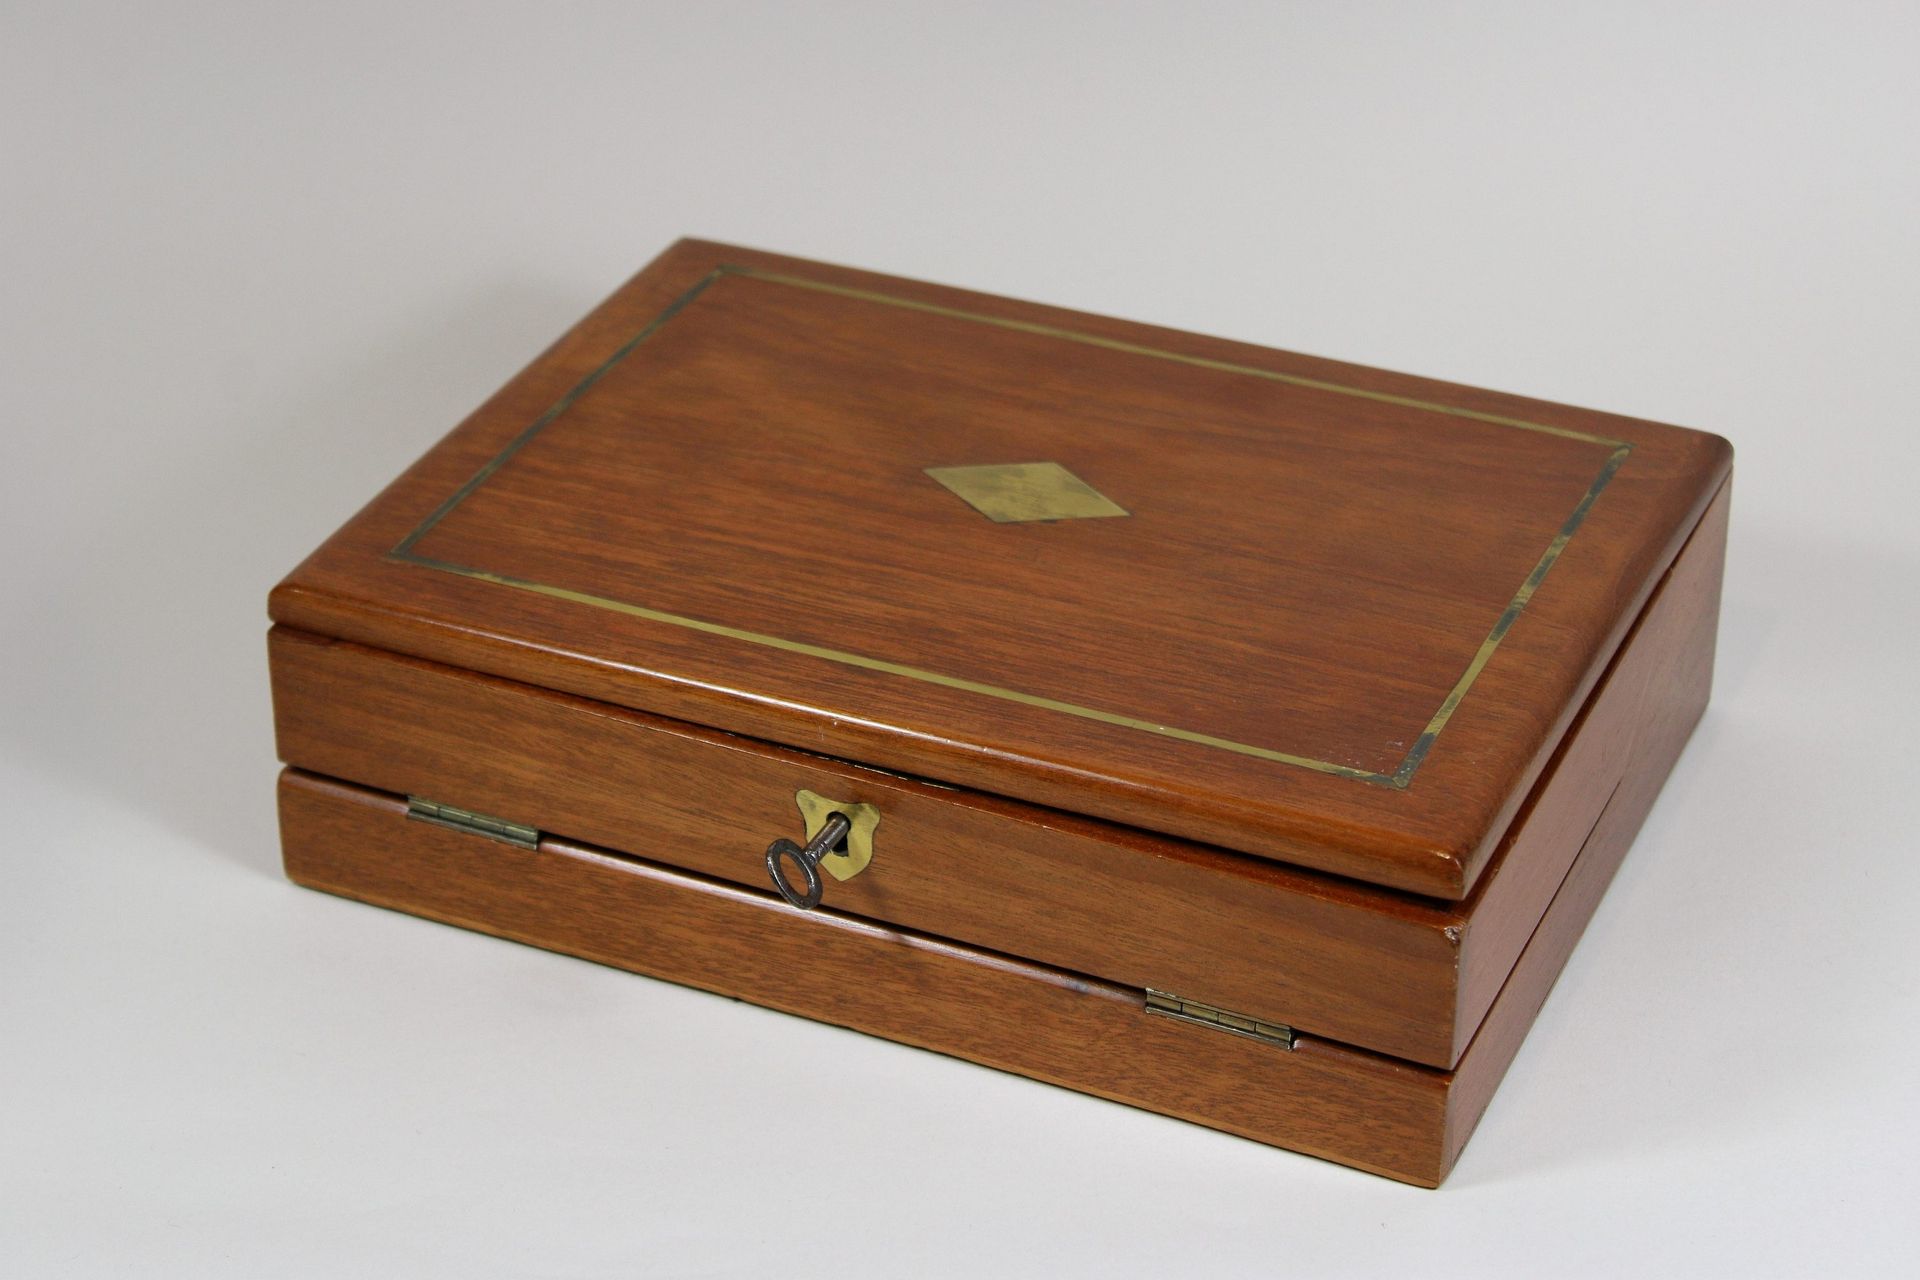 Englischer Schreibkasten 英国写字盒，桃花心木，铰链式，7个隔间，原装钥匙和锁。尺寸：27.5 x 20.3 x 7.7厘米。良好，与年&hellip;